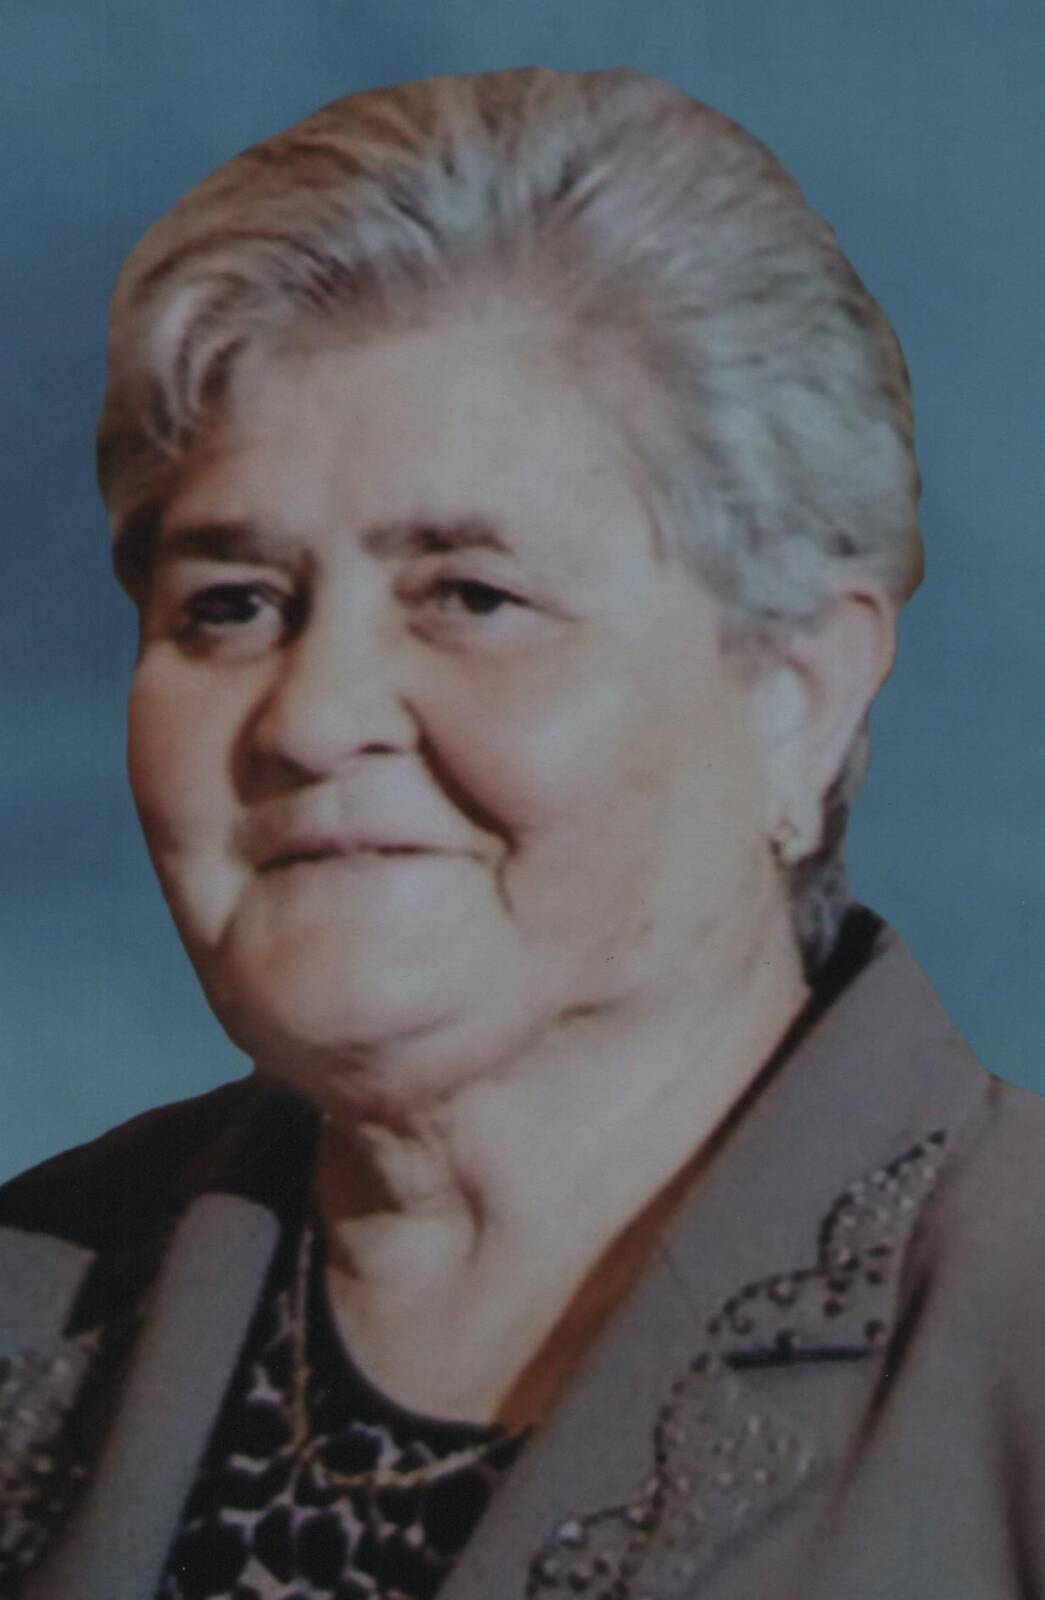 Έφυγε από την ζωή η Χρυσούλα Τσιάτσιου σε ηλικία 84 ετών – Η κηδεία θα τελεστεί το Σάββατο 11 Μαρτίου